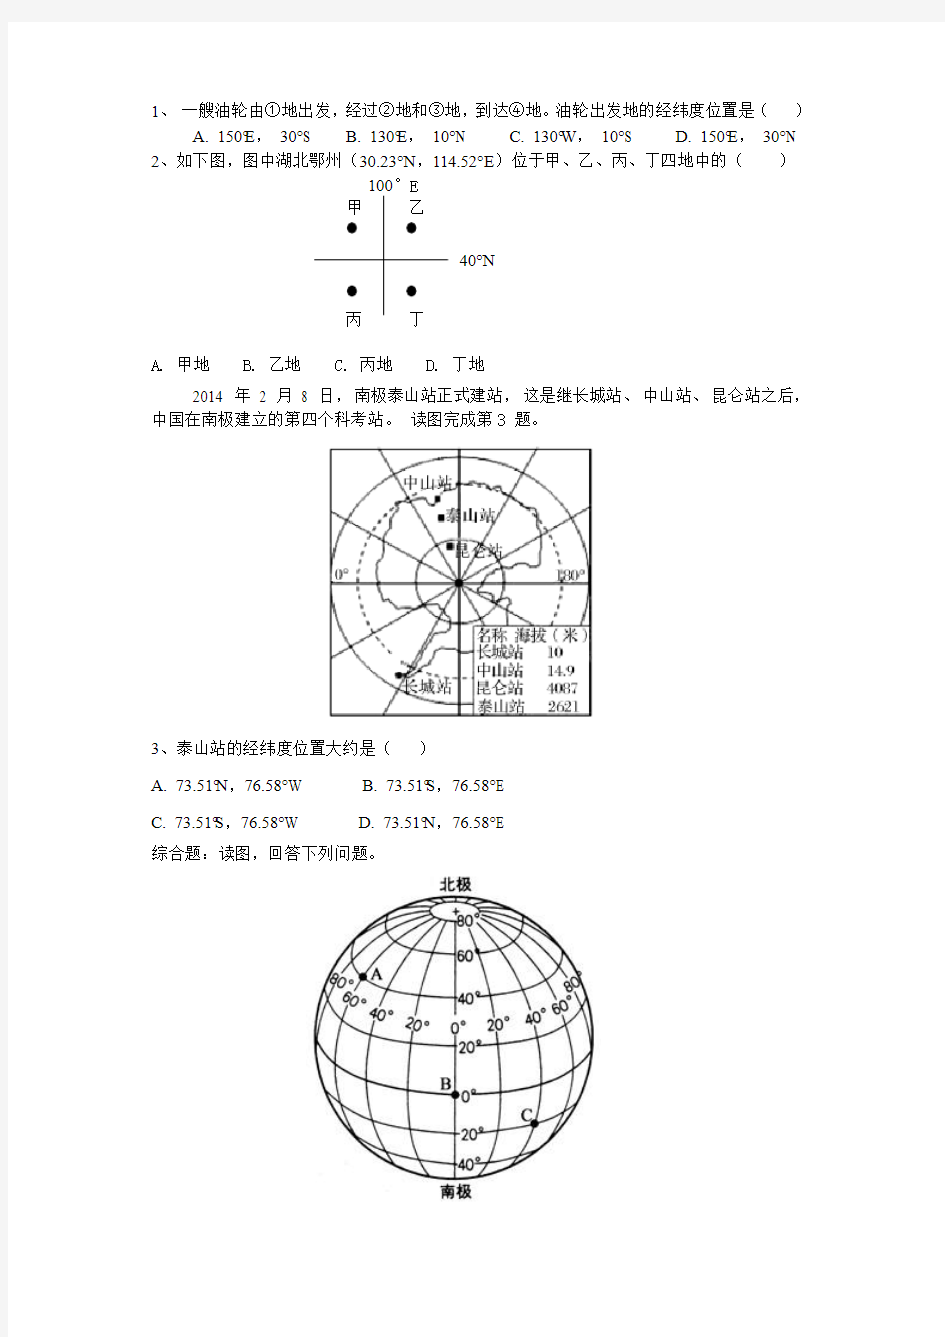 1-1-05  运用地球仪说出经线与纬线、经度与纬度的划分